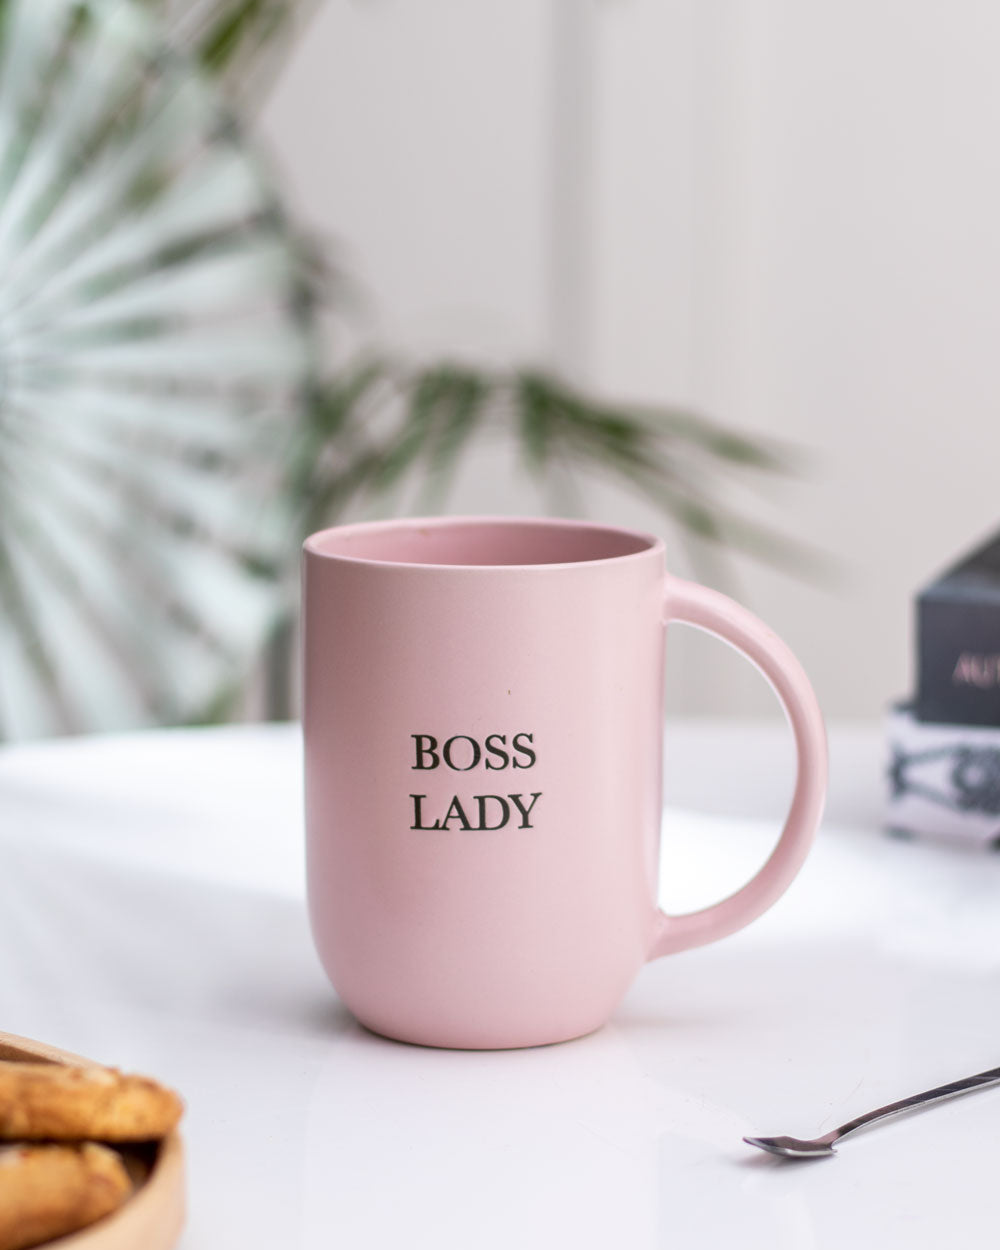 'BOSS LADY' Coffee Mug - Pink